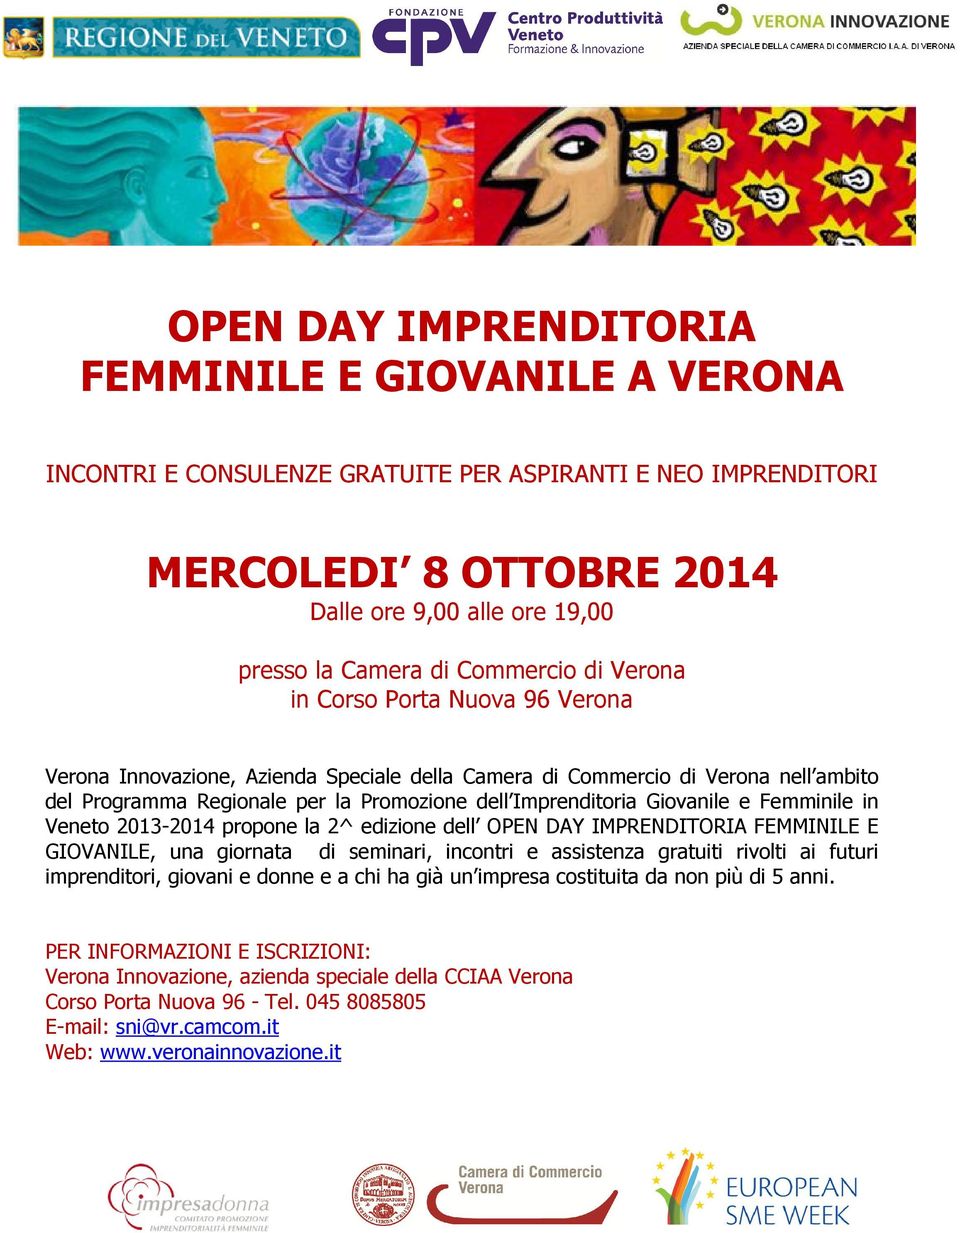 Giovanile e Femminile in Veneto 2013-2014 propone la 2^ edizione dell OPEN DAY IMPRENDITORIA FEMMINILE E GIOVANILE, una giornata di seminari, incontri e assistenza gratuiti rivolti ai futuri